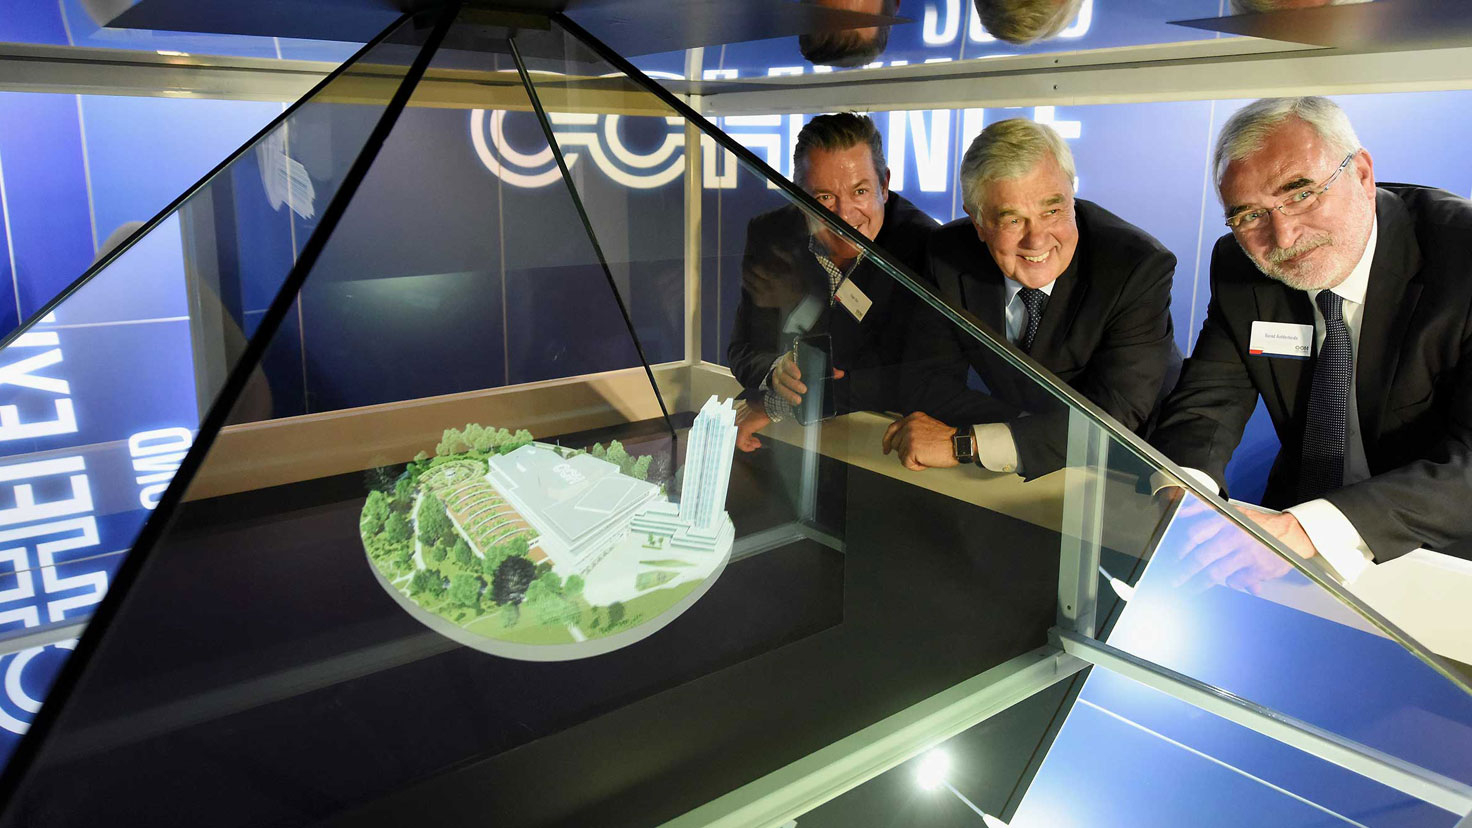 Eröffnung CCH-Showroom, 30. Mai 2017 / v. l. n. r.: Edgar Hirt, Wirtschaftssenator Frank Horch und Bernd Aufderheide an der Hologramm-Pyramide